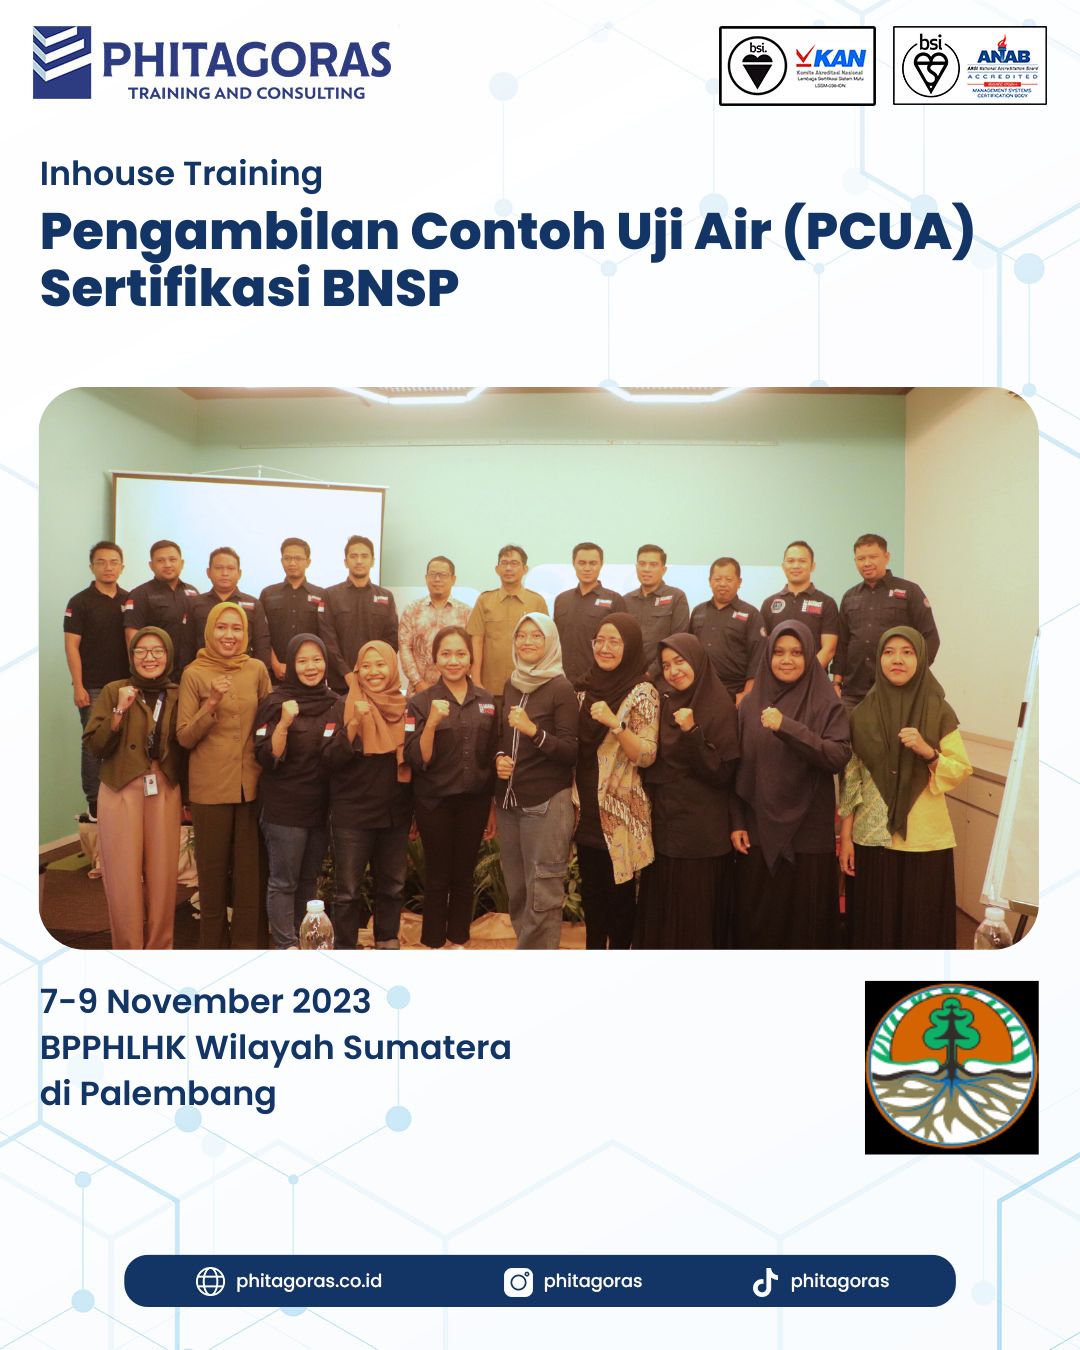 Inhouse Training Pengambilan Contoh Uji Air (PCUA) Sertifikasi BNSP - BPPHLHK Wilayah Sumatera di Palembang